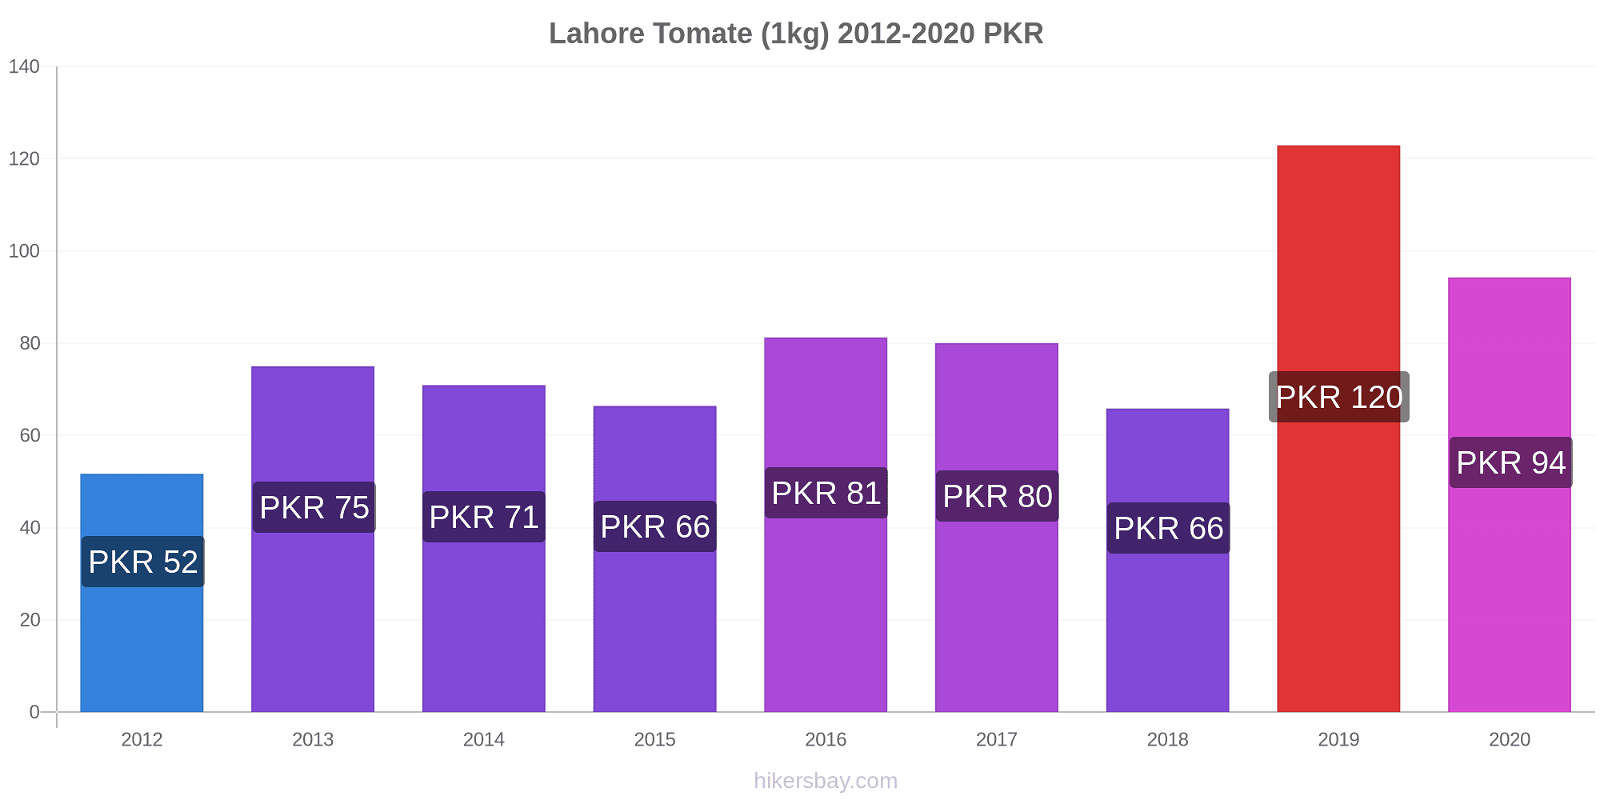 Lahore cambios de precios Tomate (1kg) hikersbay.com